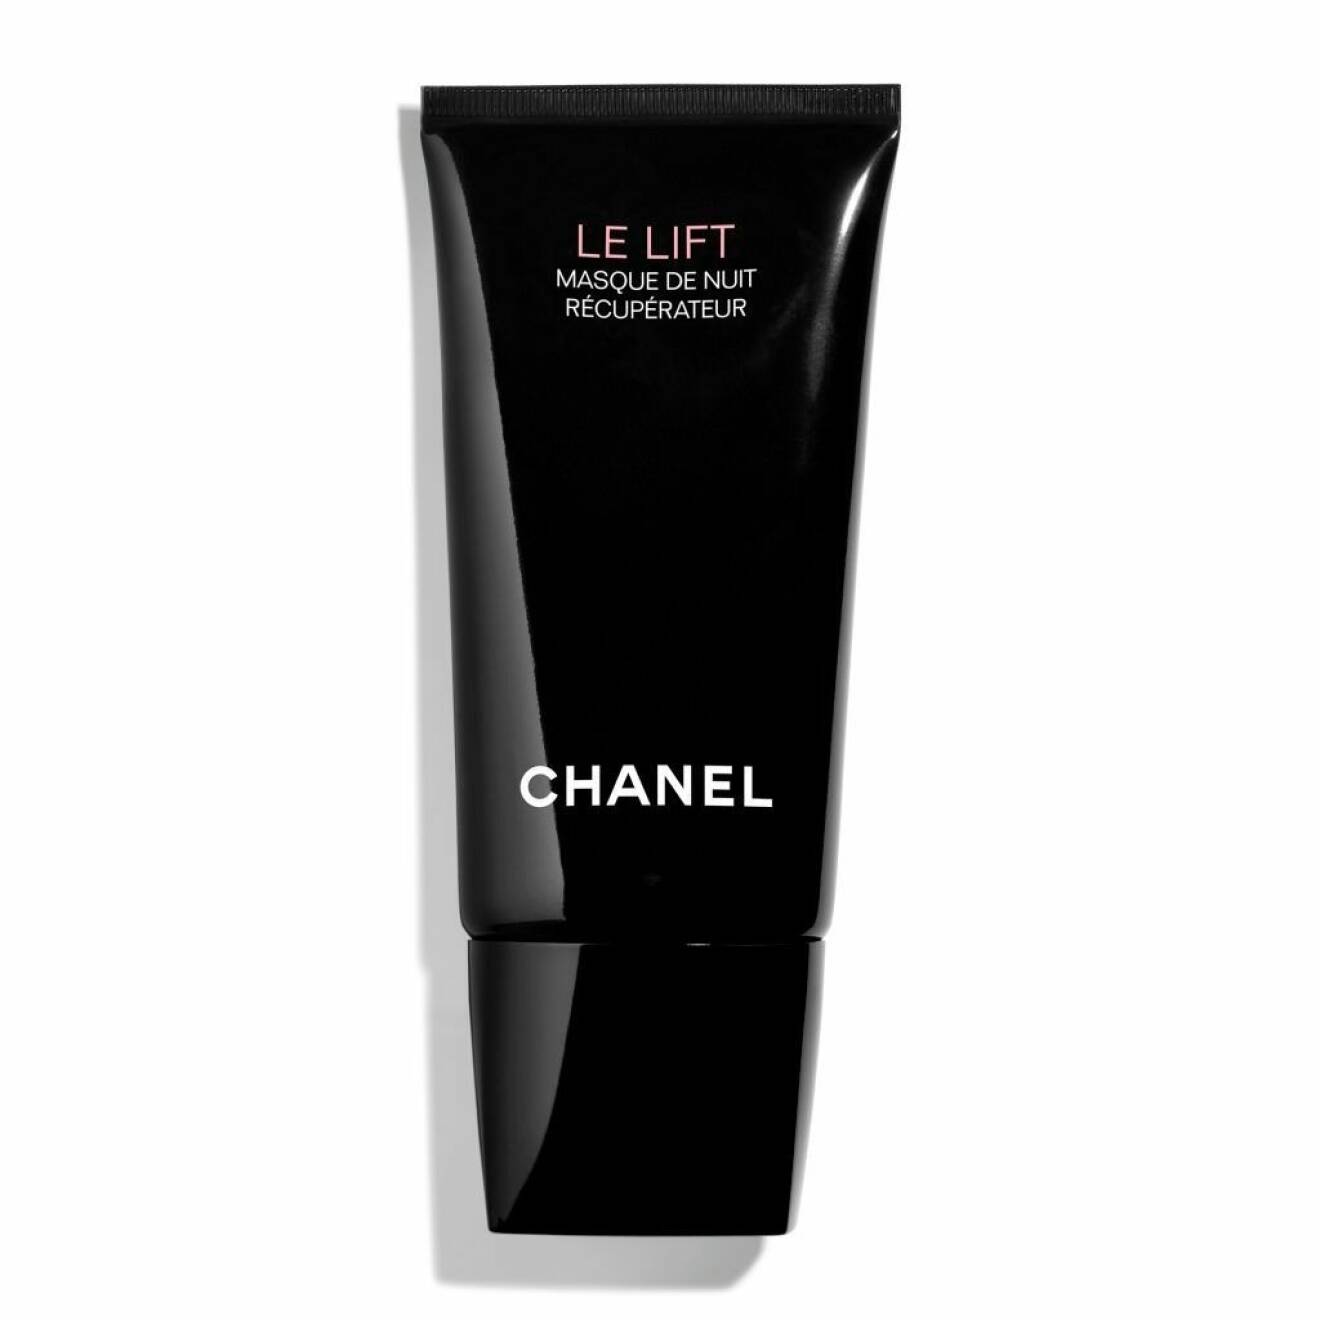 Anti wrinkle skin recovery sleep mask från Le lift serien hos Chanel.